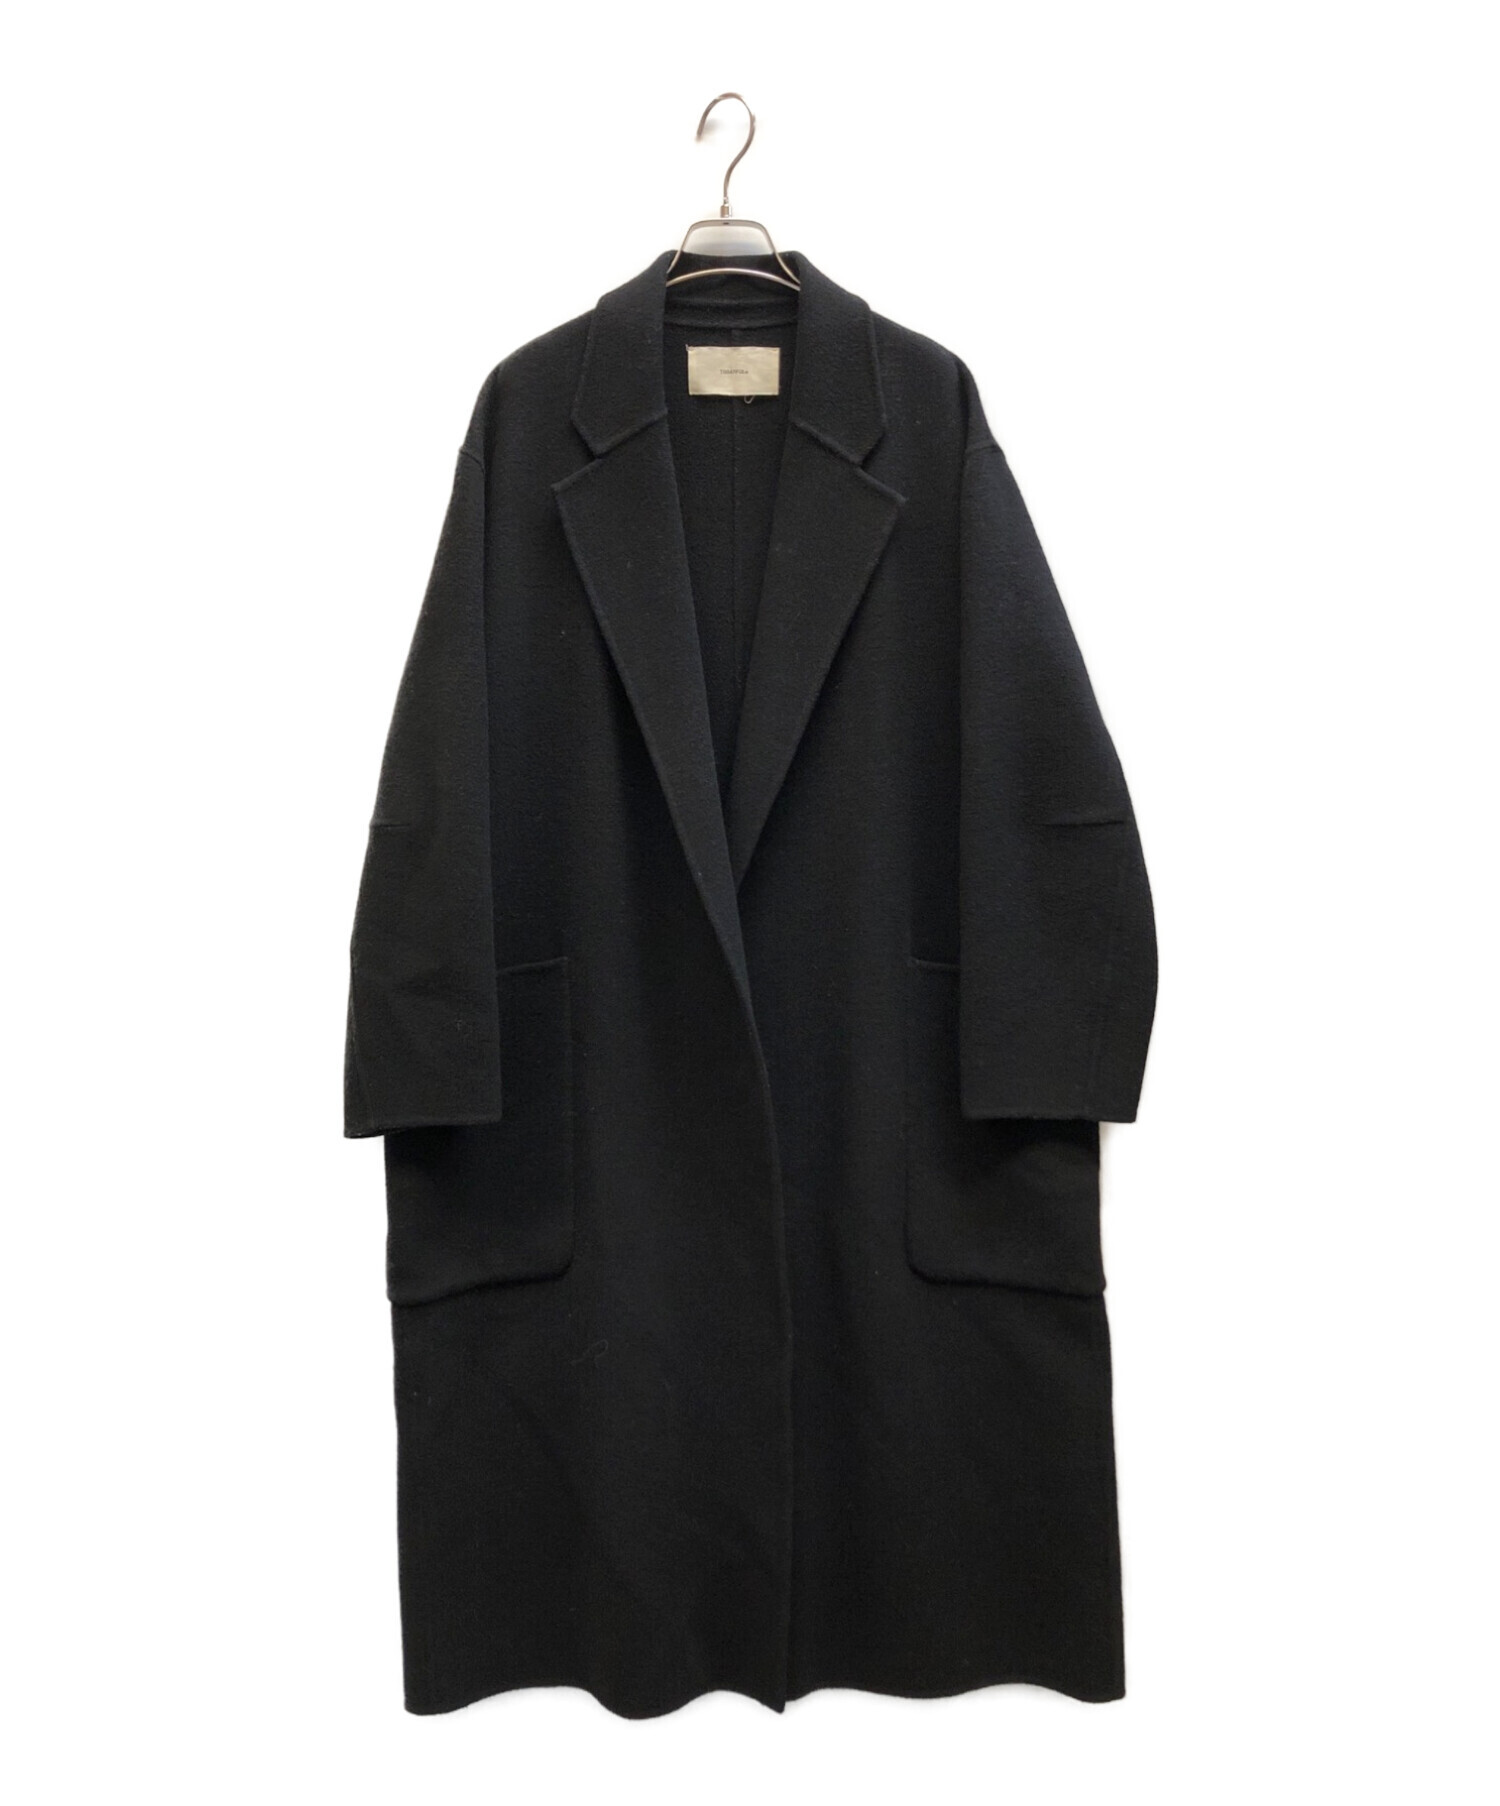 TODAYFUL (トゥデイフル) Wool Over Coat　ウールオーバーコート ブラック サイズ:38